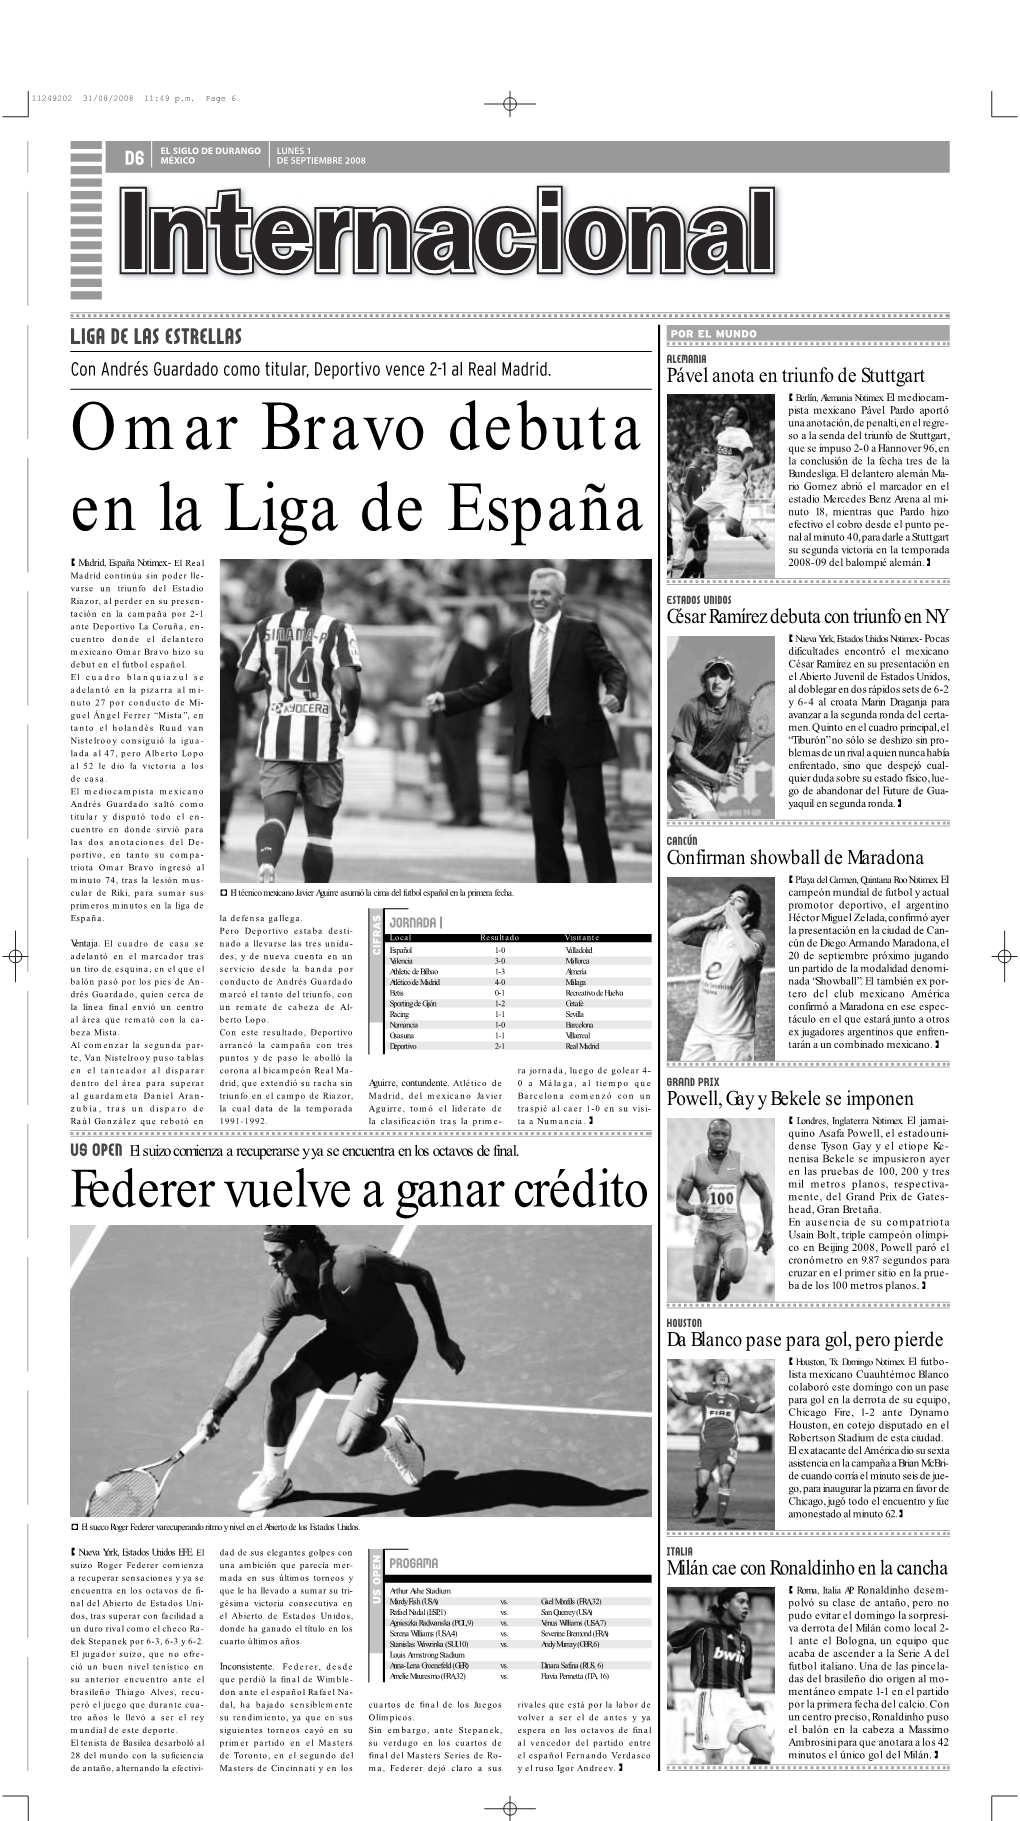 Omar Bravo Debuta En La Liga De España